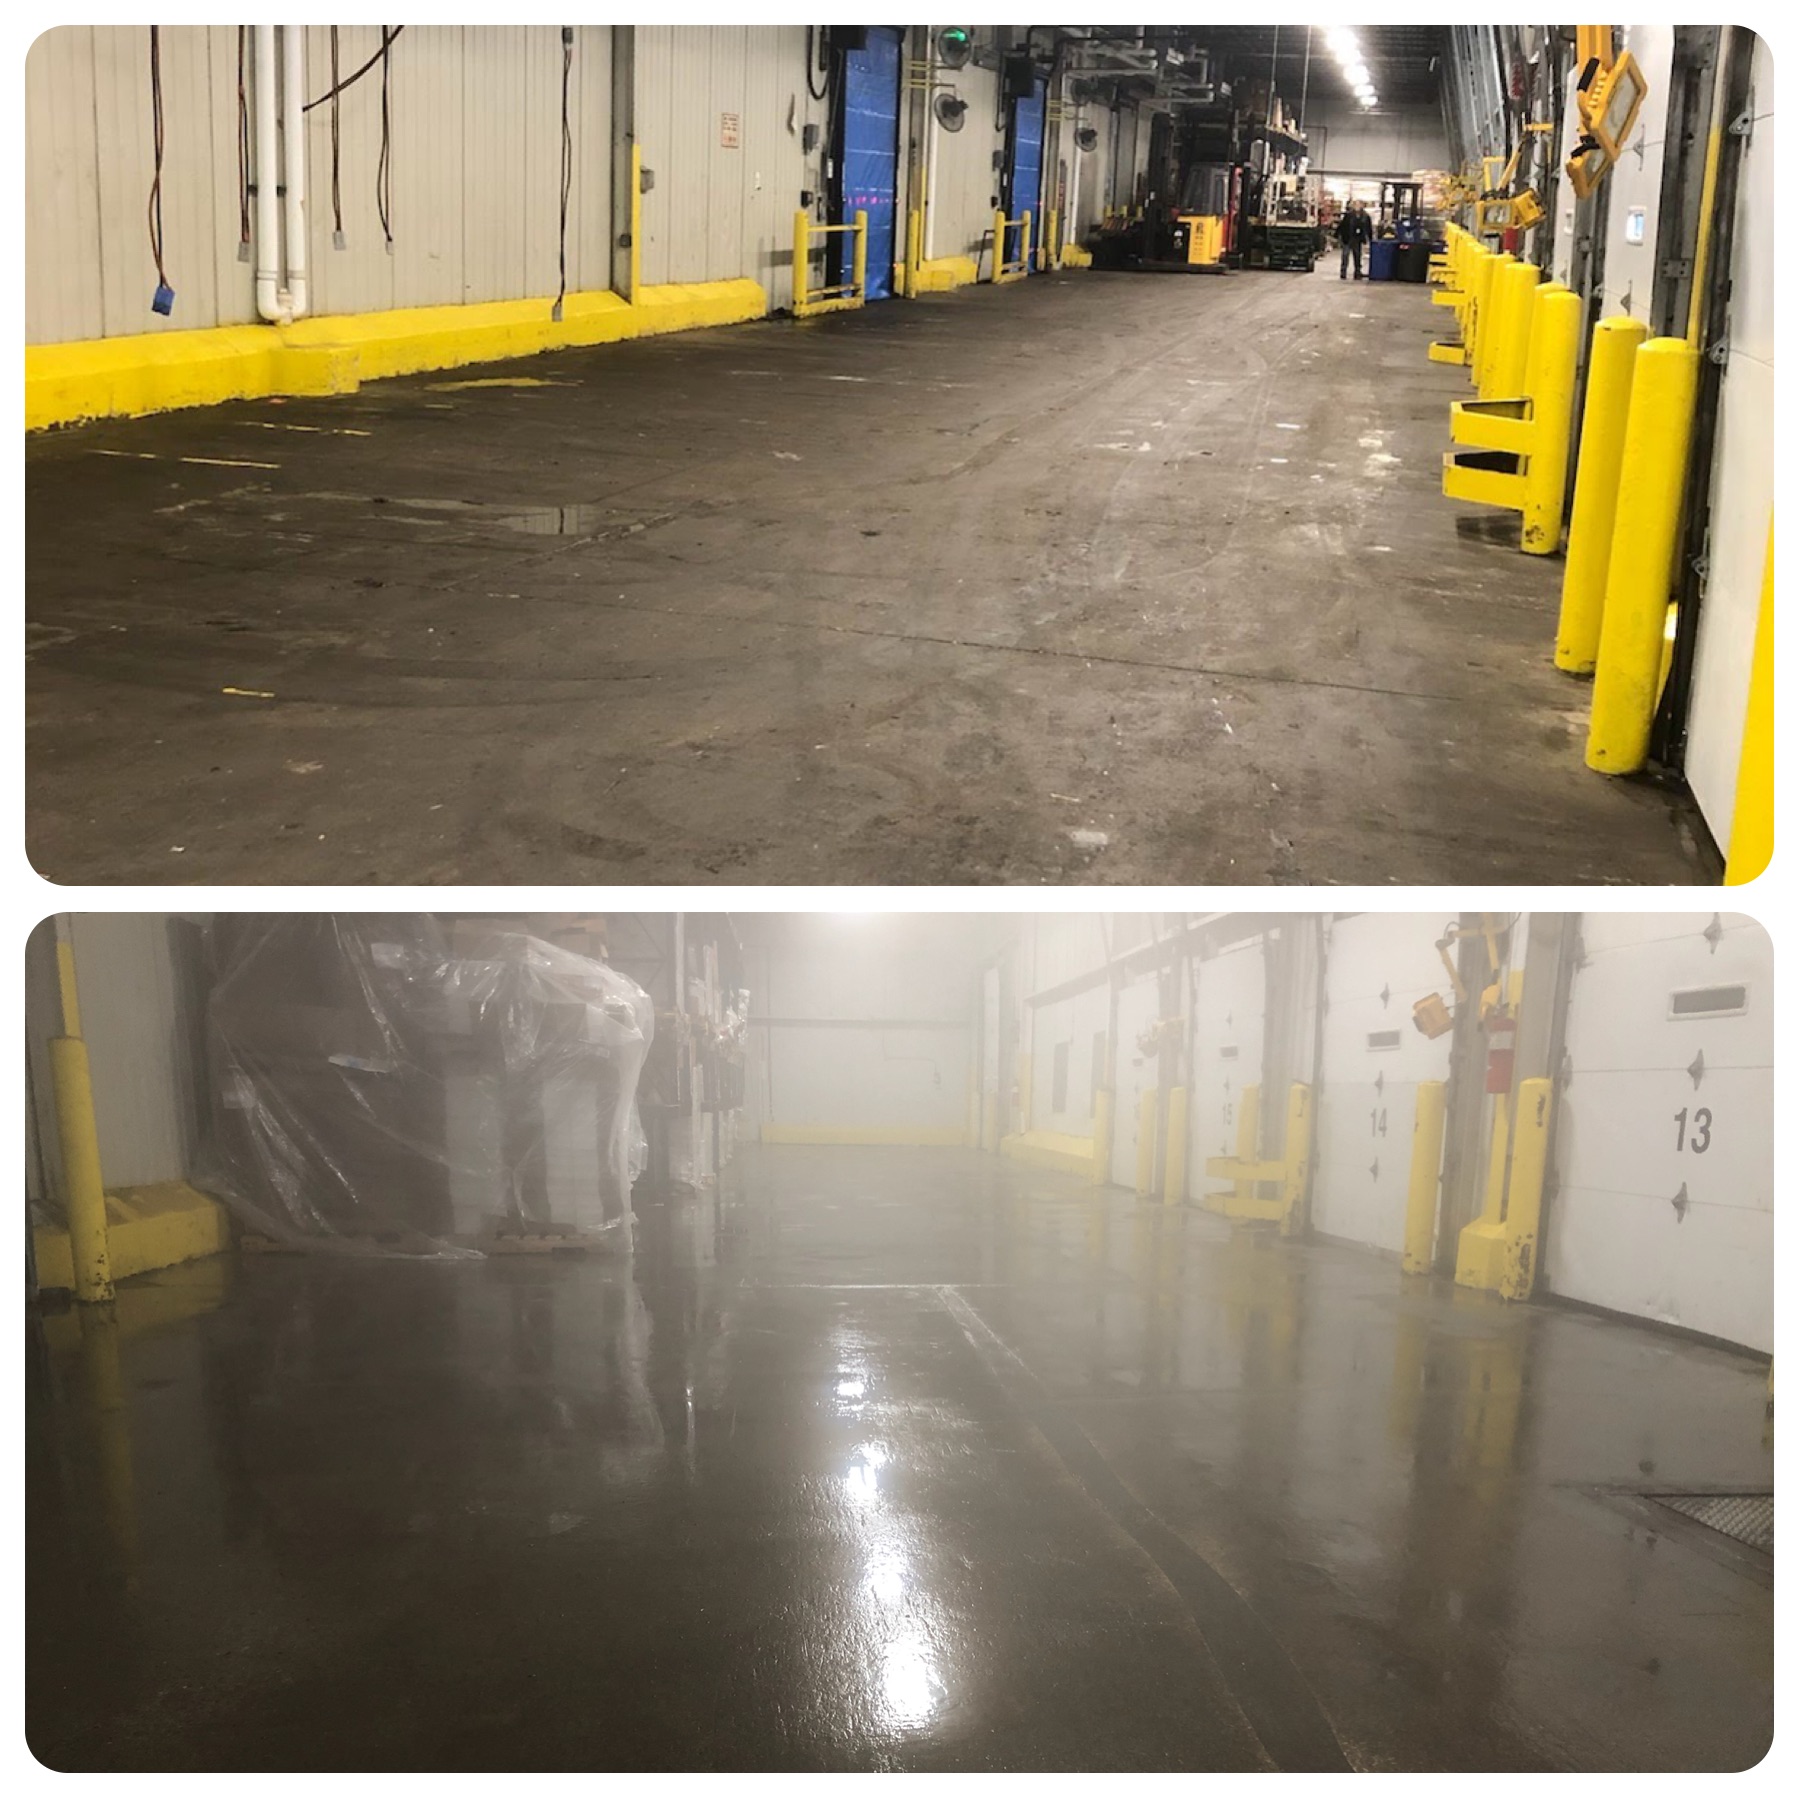 Warehouse floor